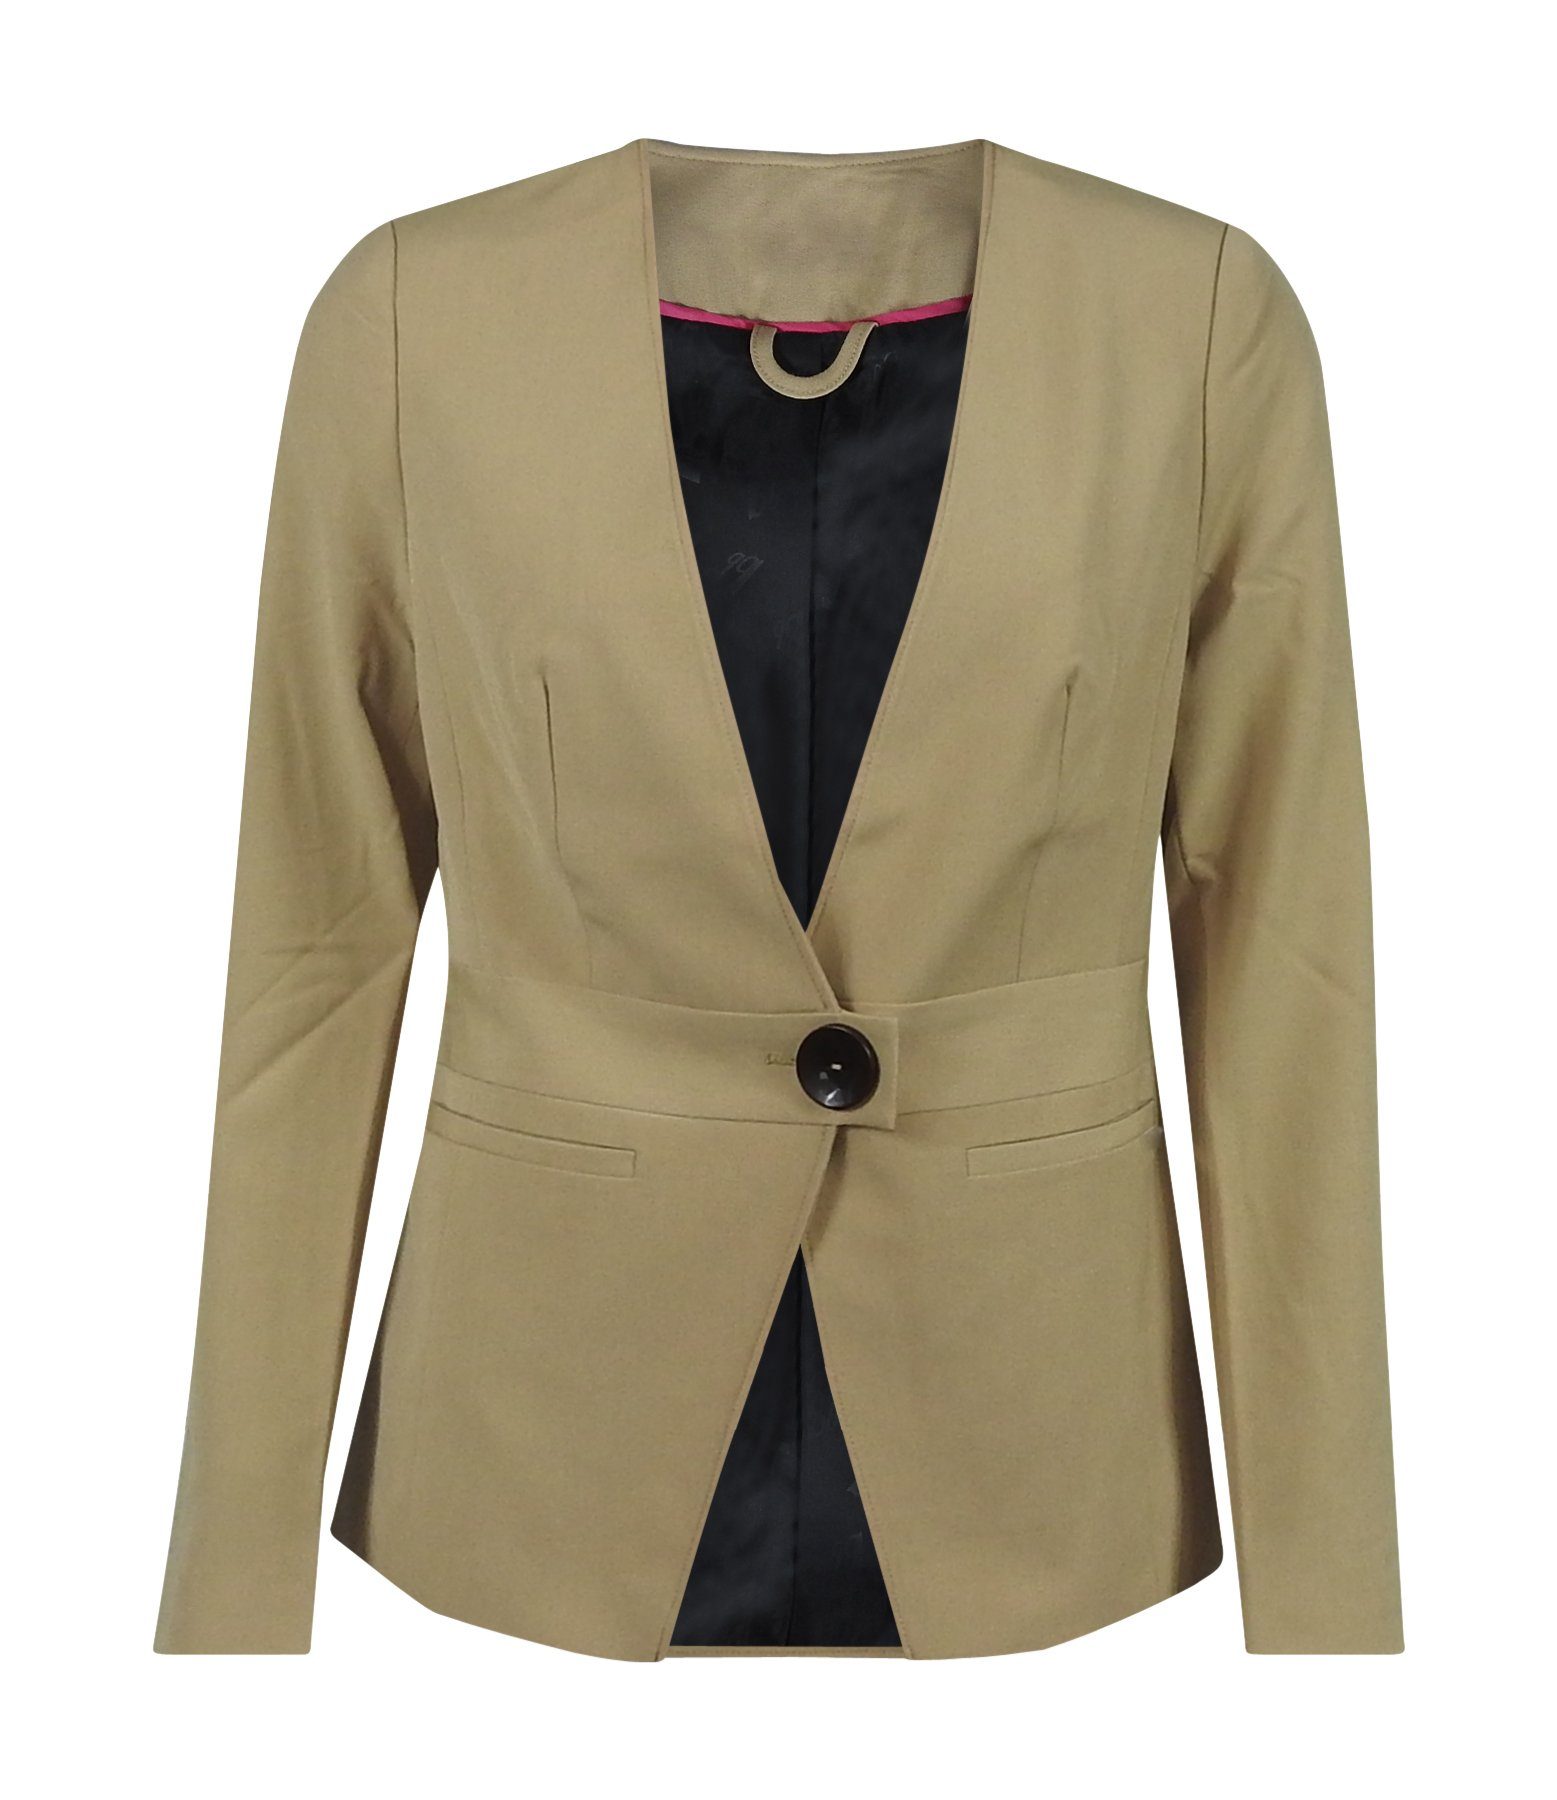 dynamic24 Jerseyblazer Damen Casual Business Basic kragenlos Sakko beige Blazer Jacke